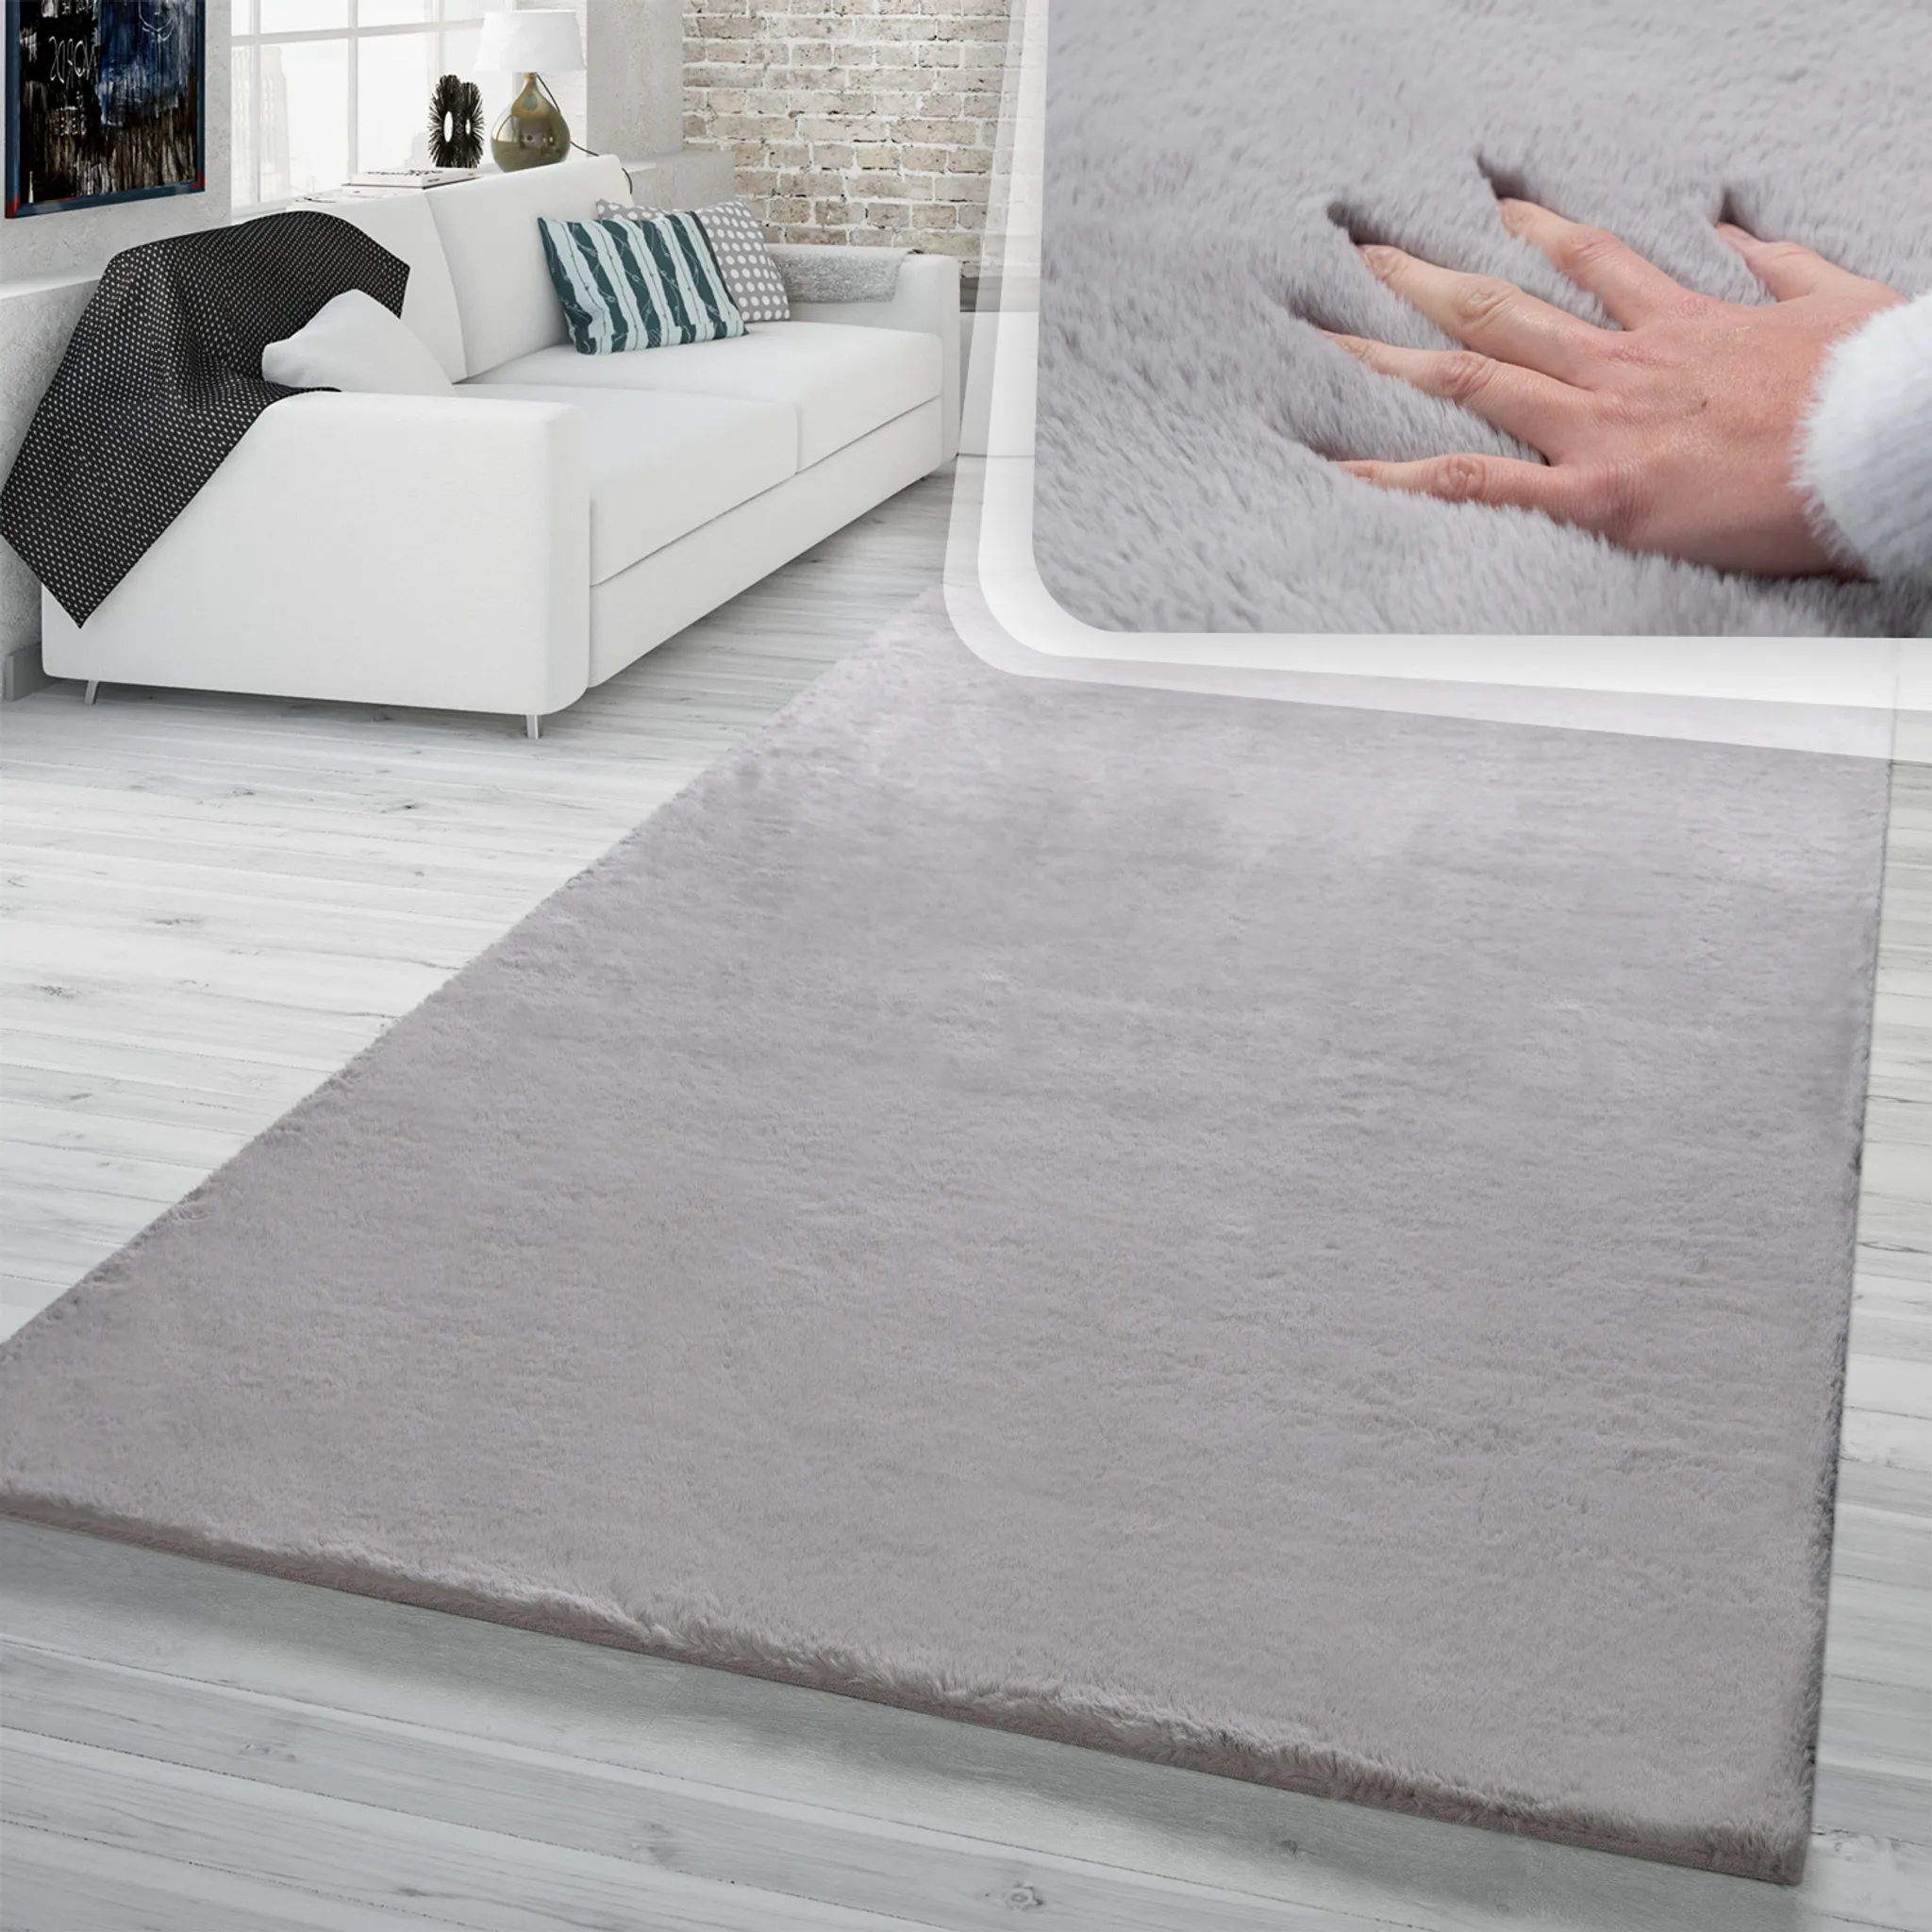 cm Hochflor Teppich Wohnzimmer Kaninchenfell Softes Super Kunstfell Größe Grau In 140x200 Imitat